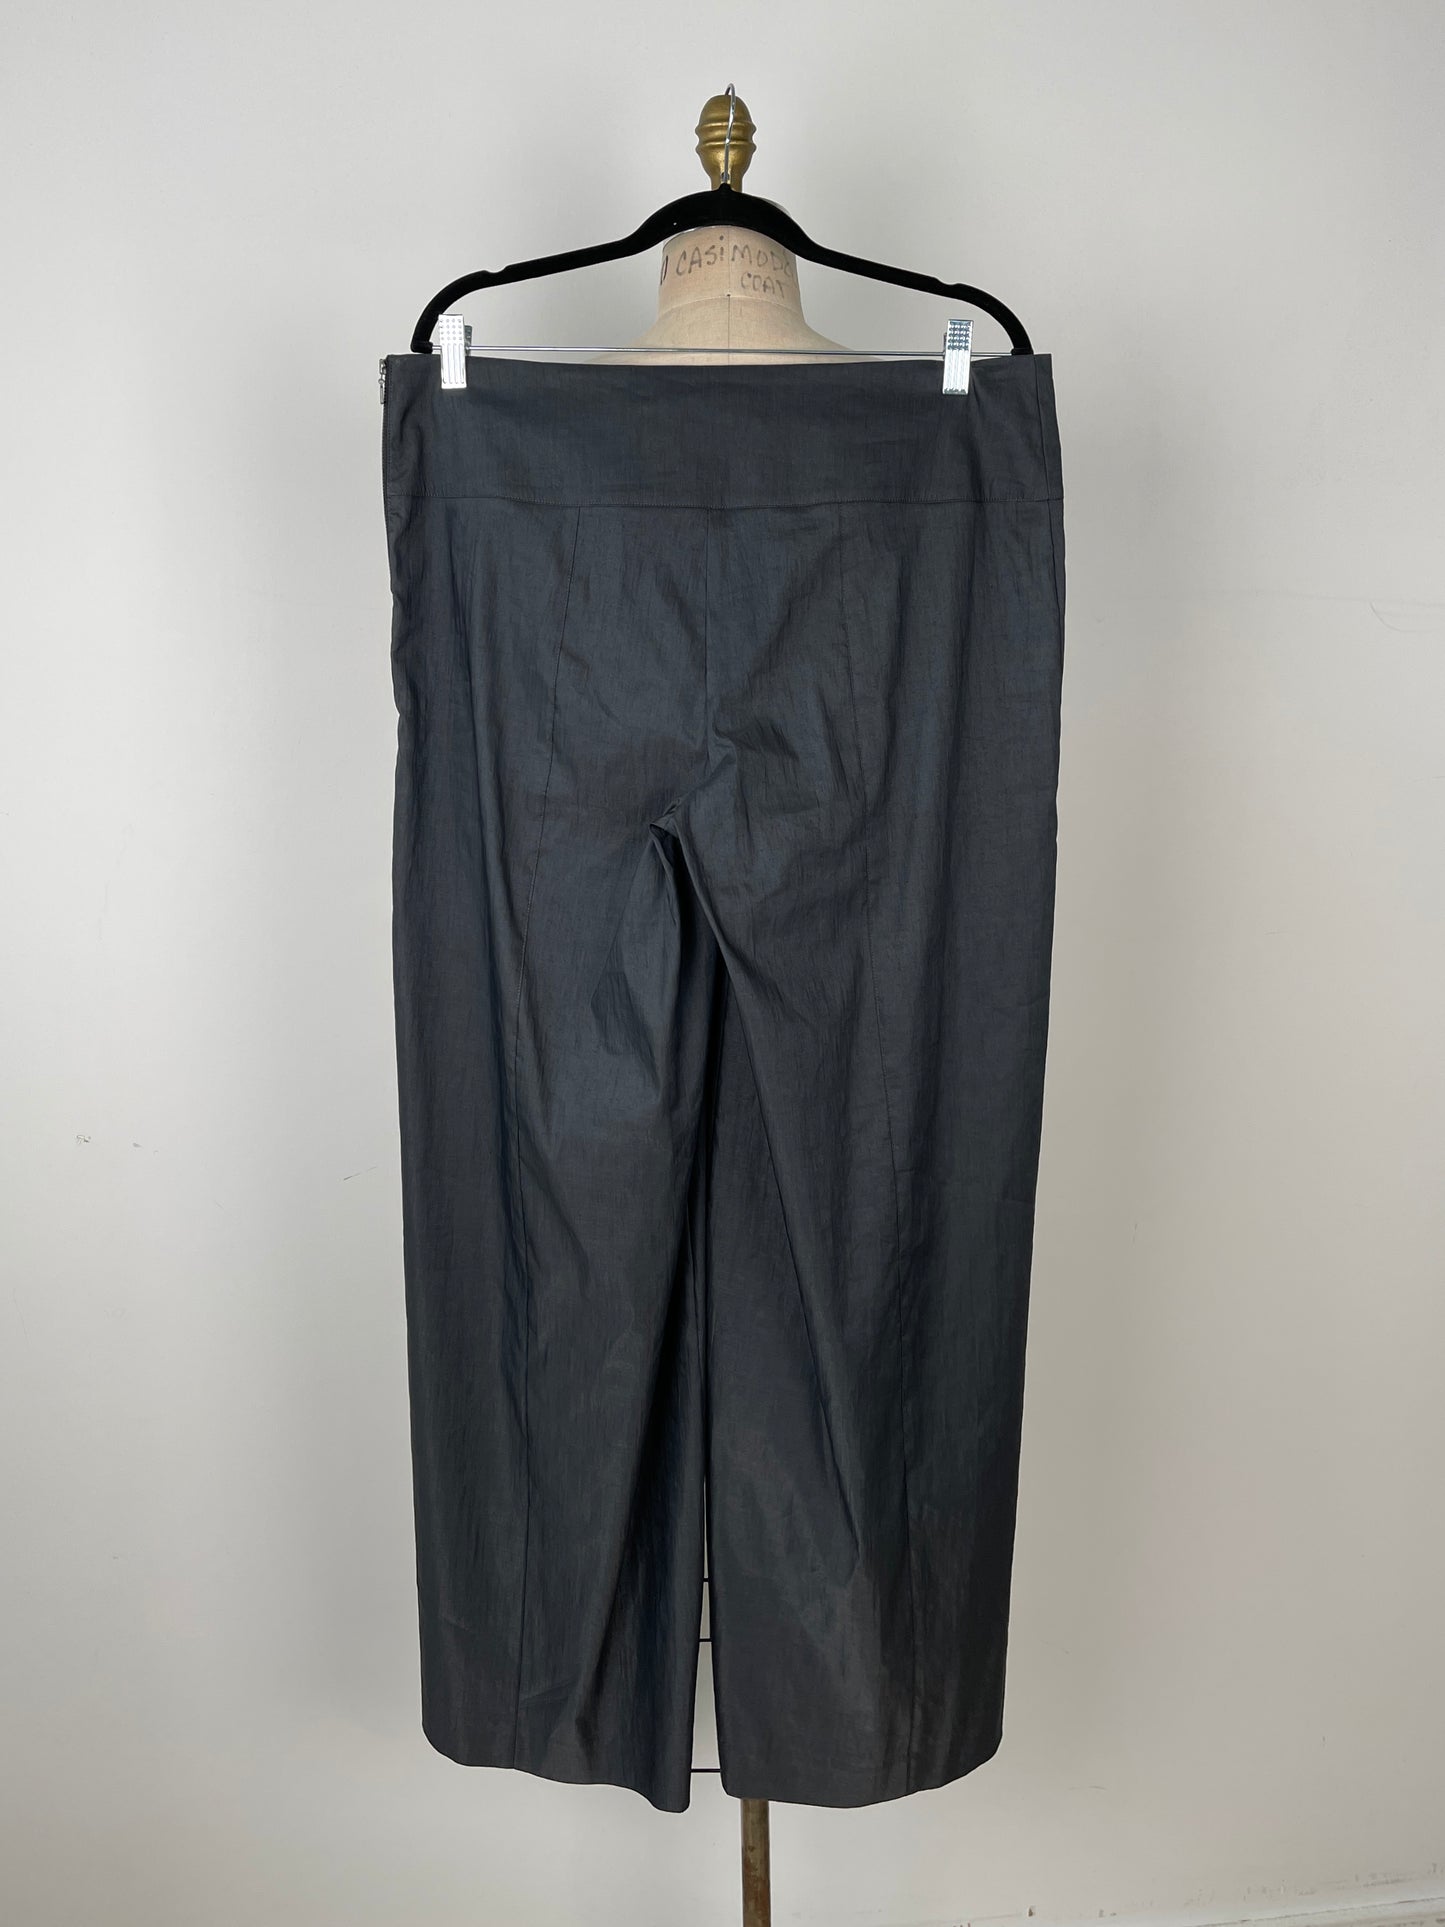 Pantalon anthracite lustré à jambe droite (XL)